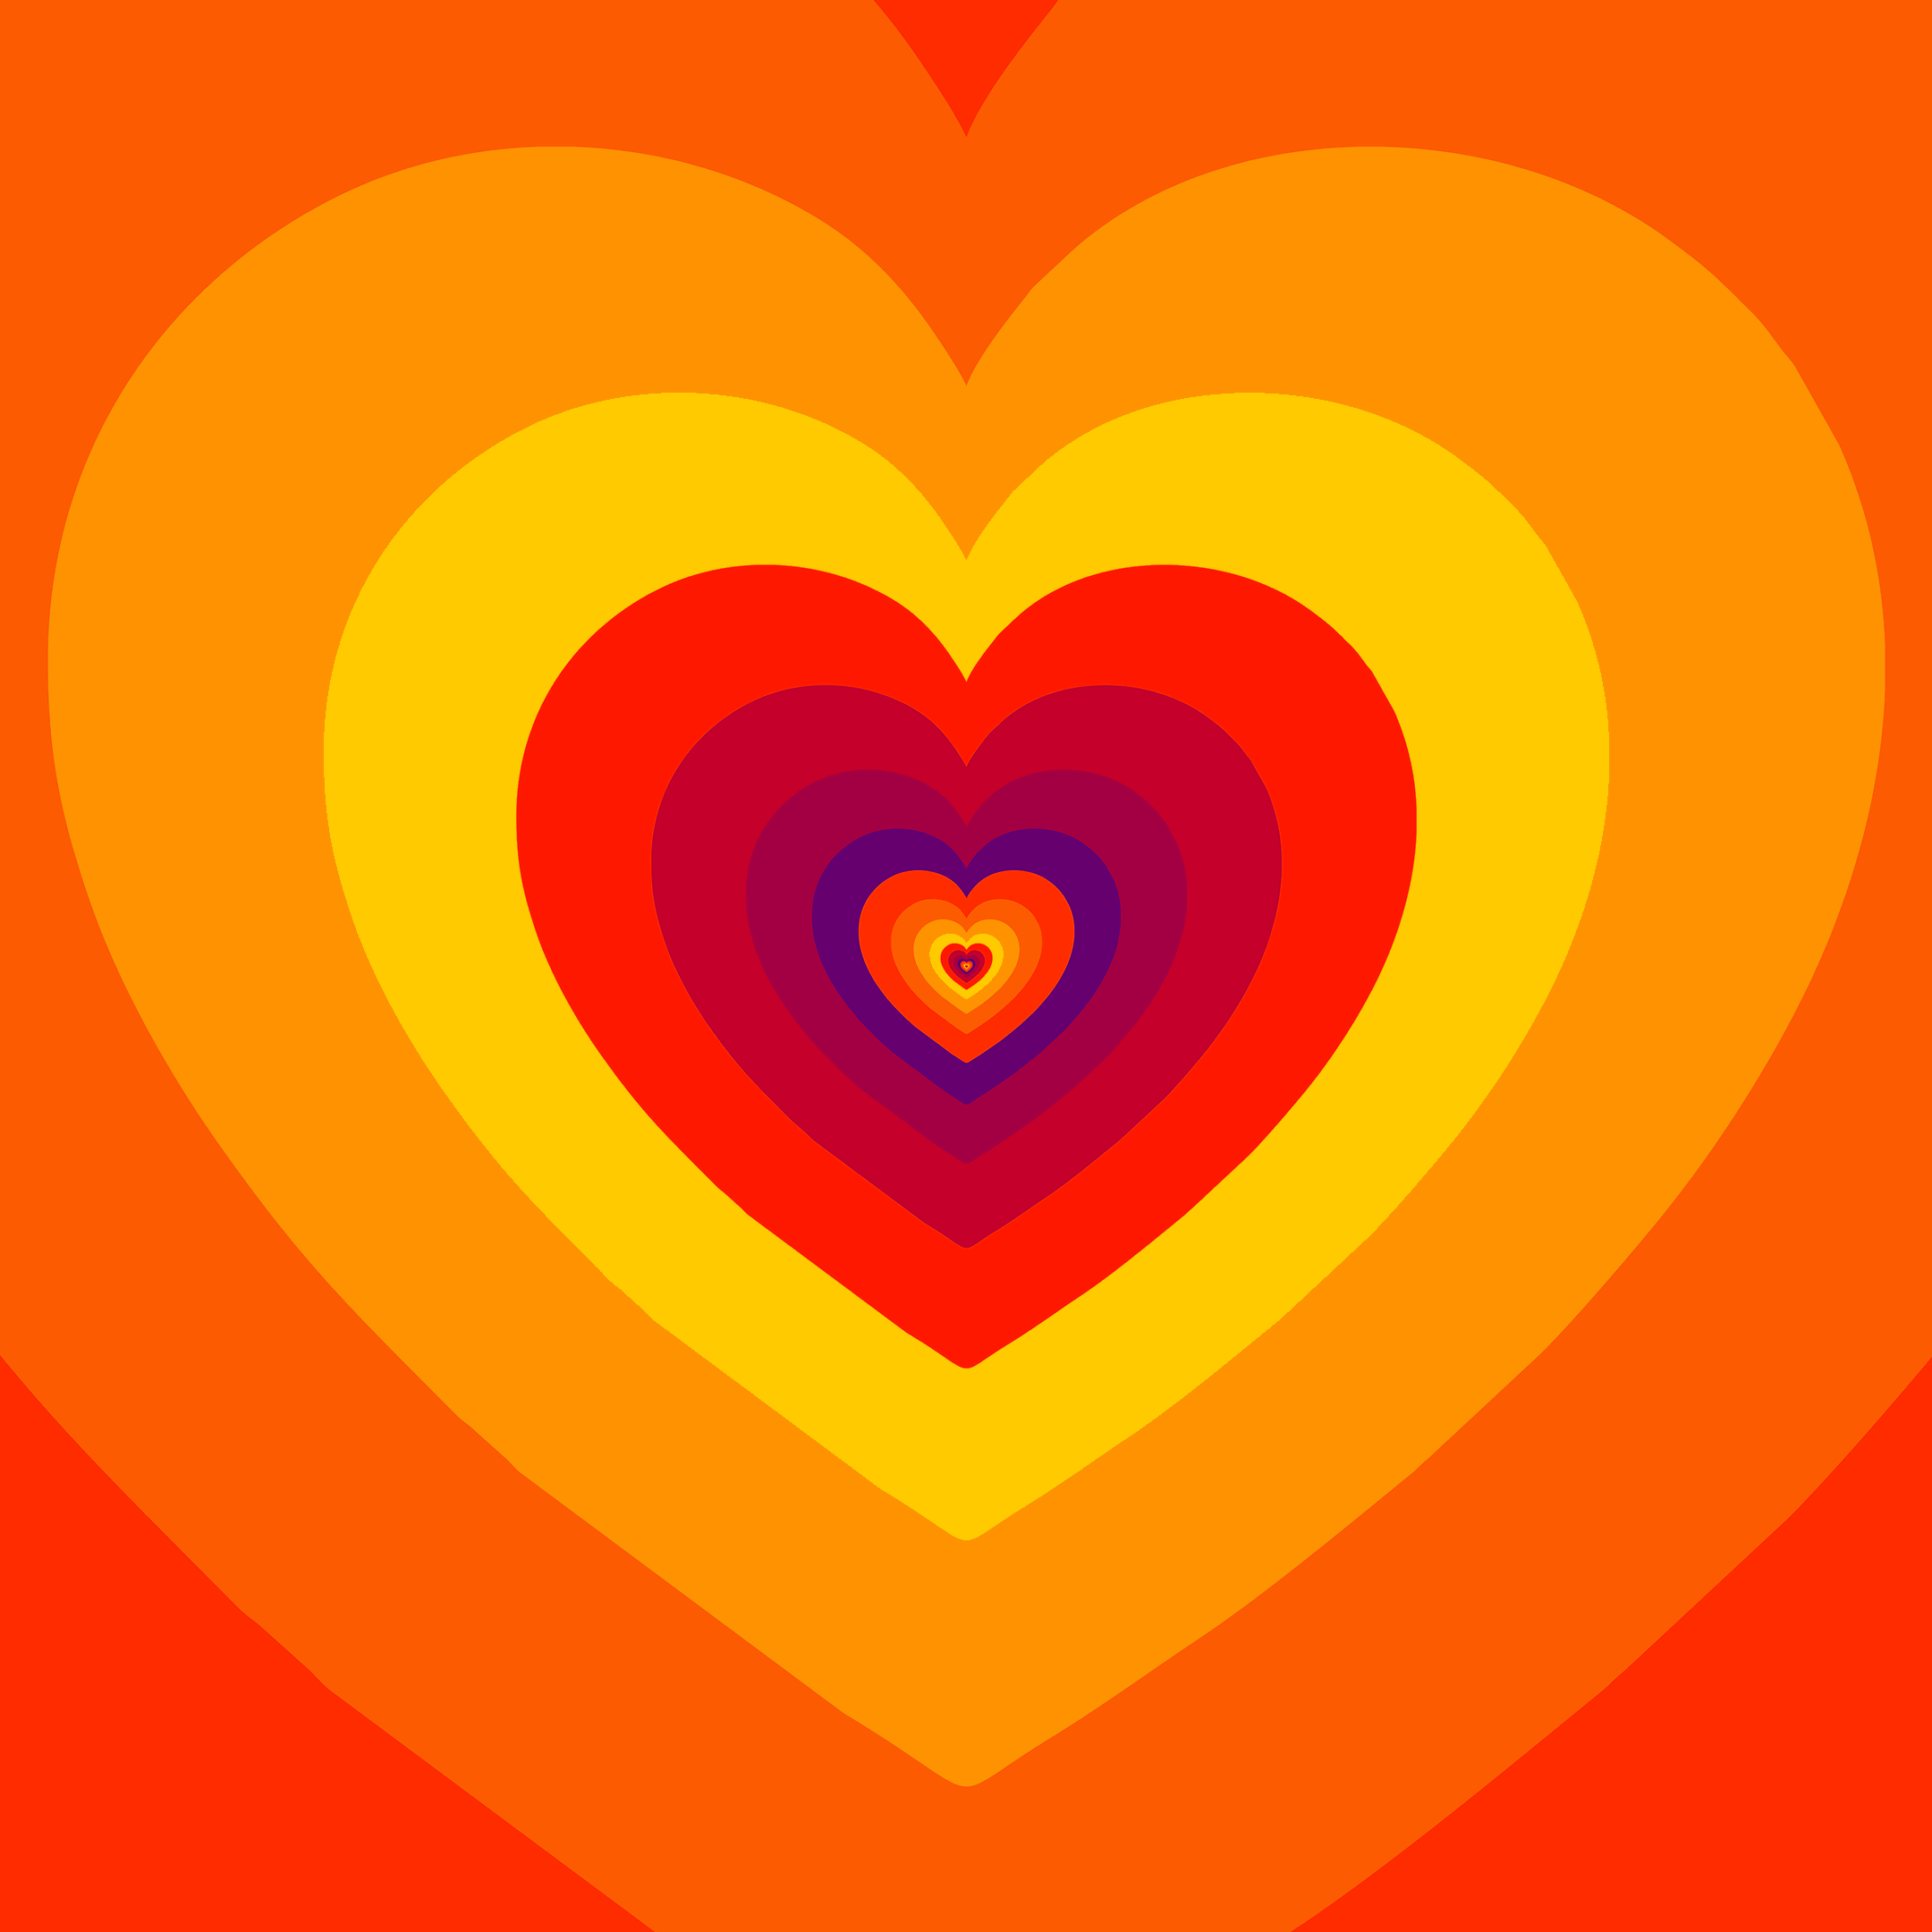 I Love You Hearts Gif By Feliks Tomasz Konczakowski Find Share On Giphy